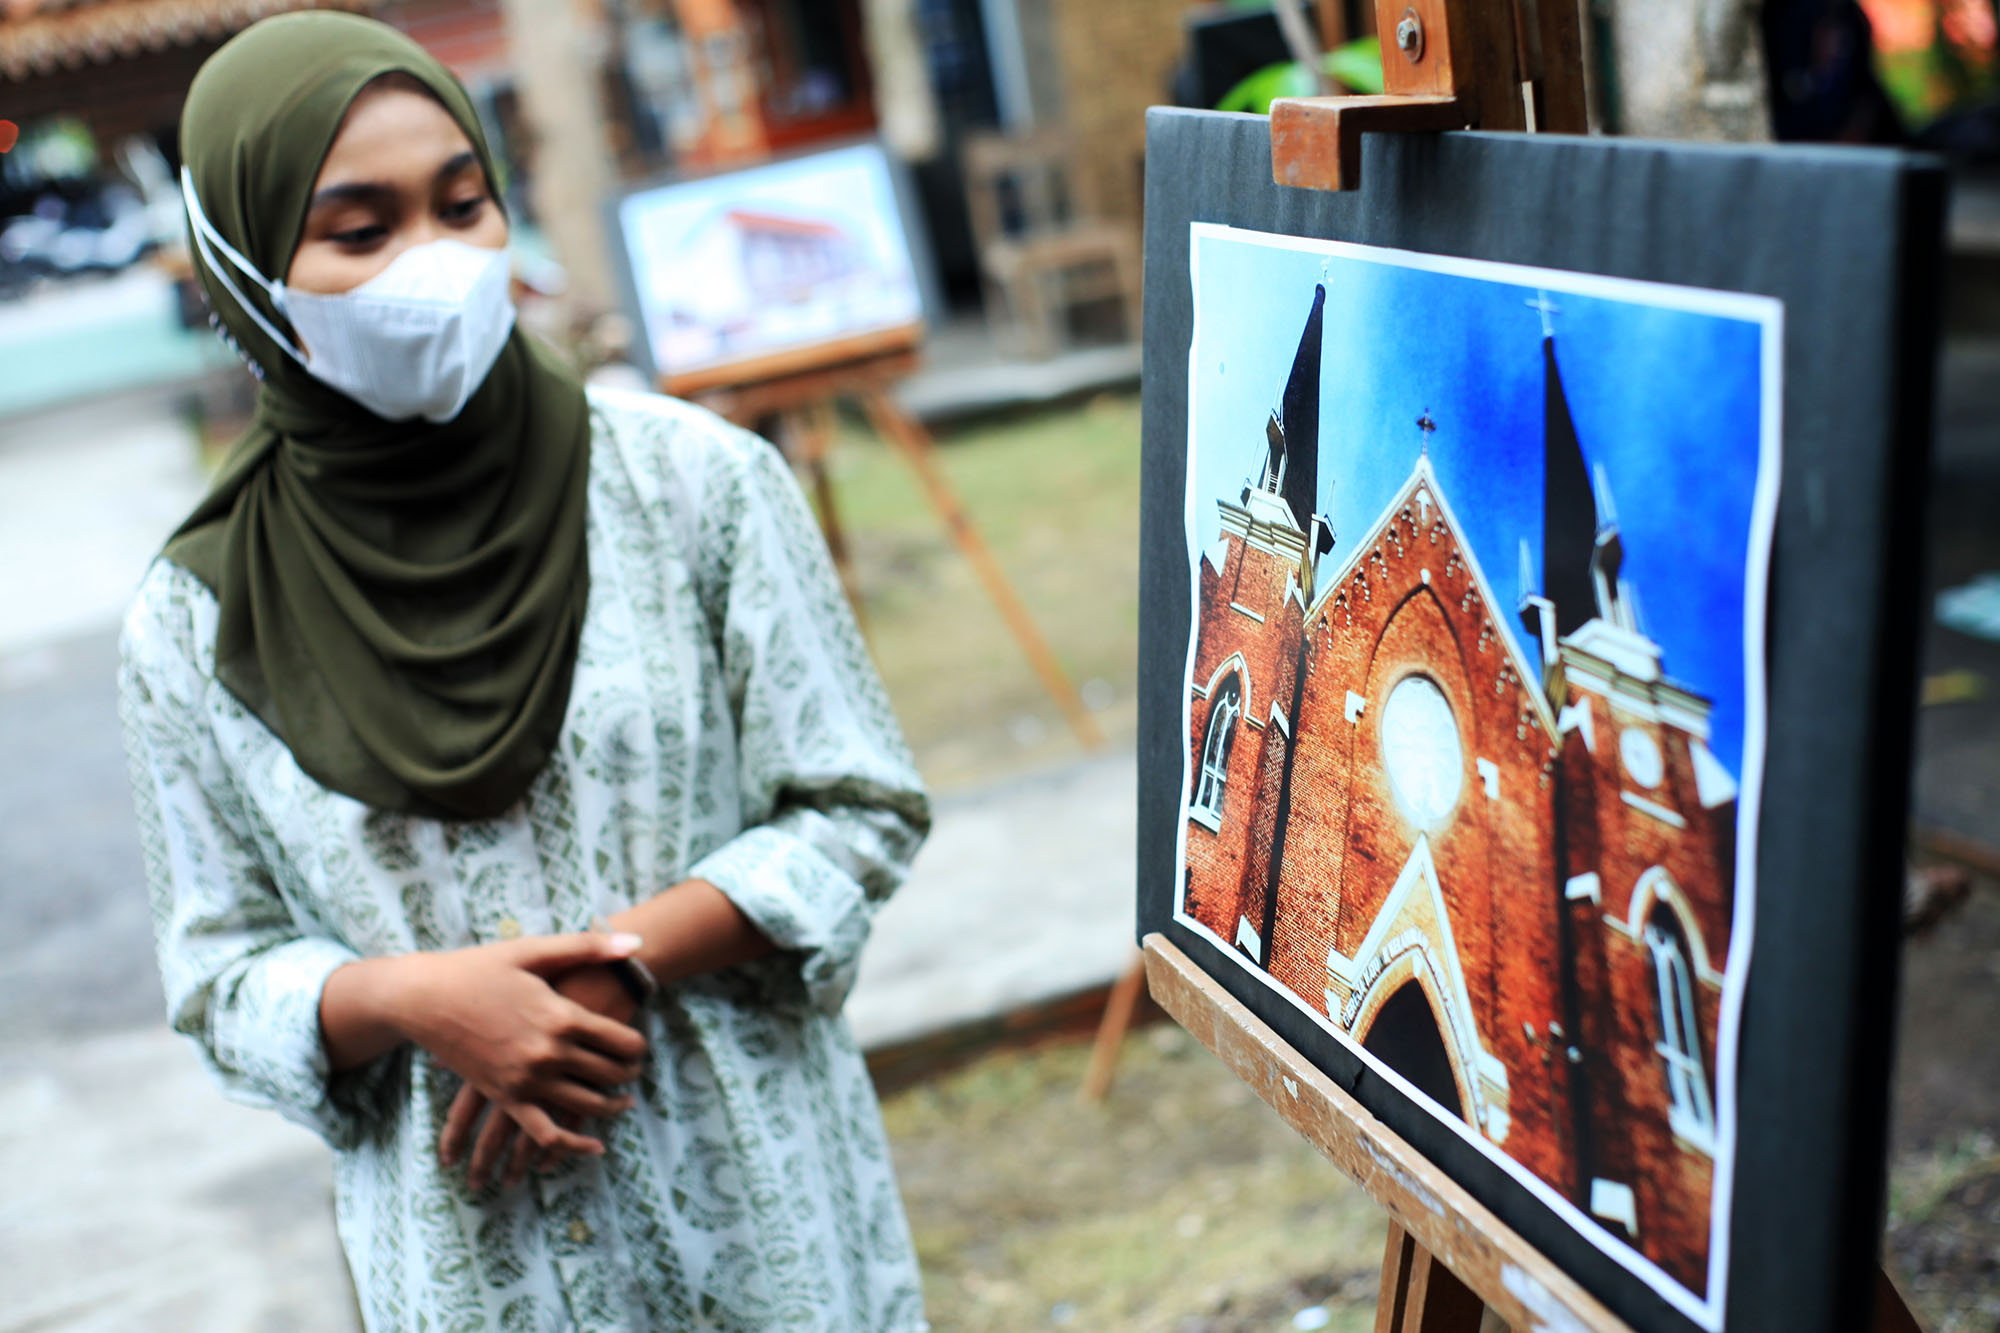 Ciphoc Pamerkan Puluhan Karya Fotografi Analog, Sekaligus Gerakan Sosial